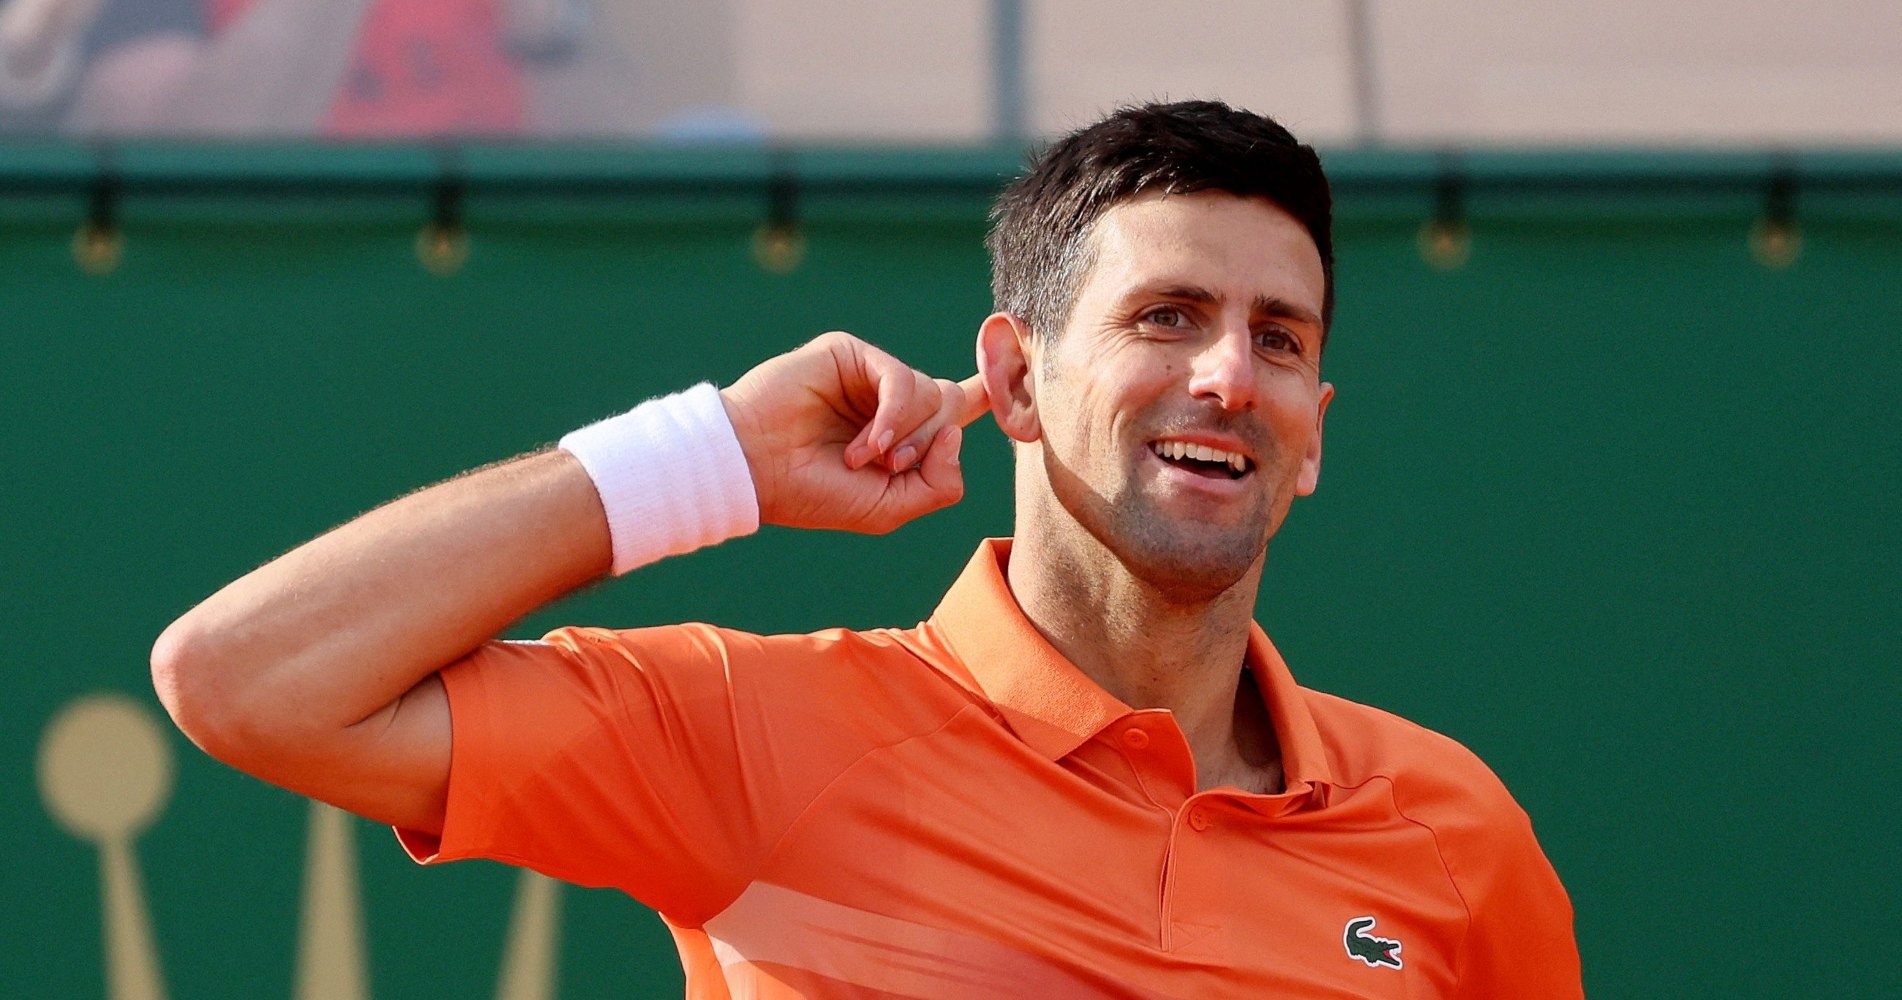 Tennis Morale-boosting win for Djokovic in Belgrade